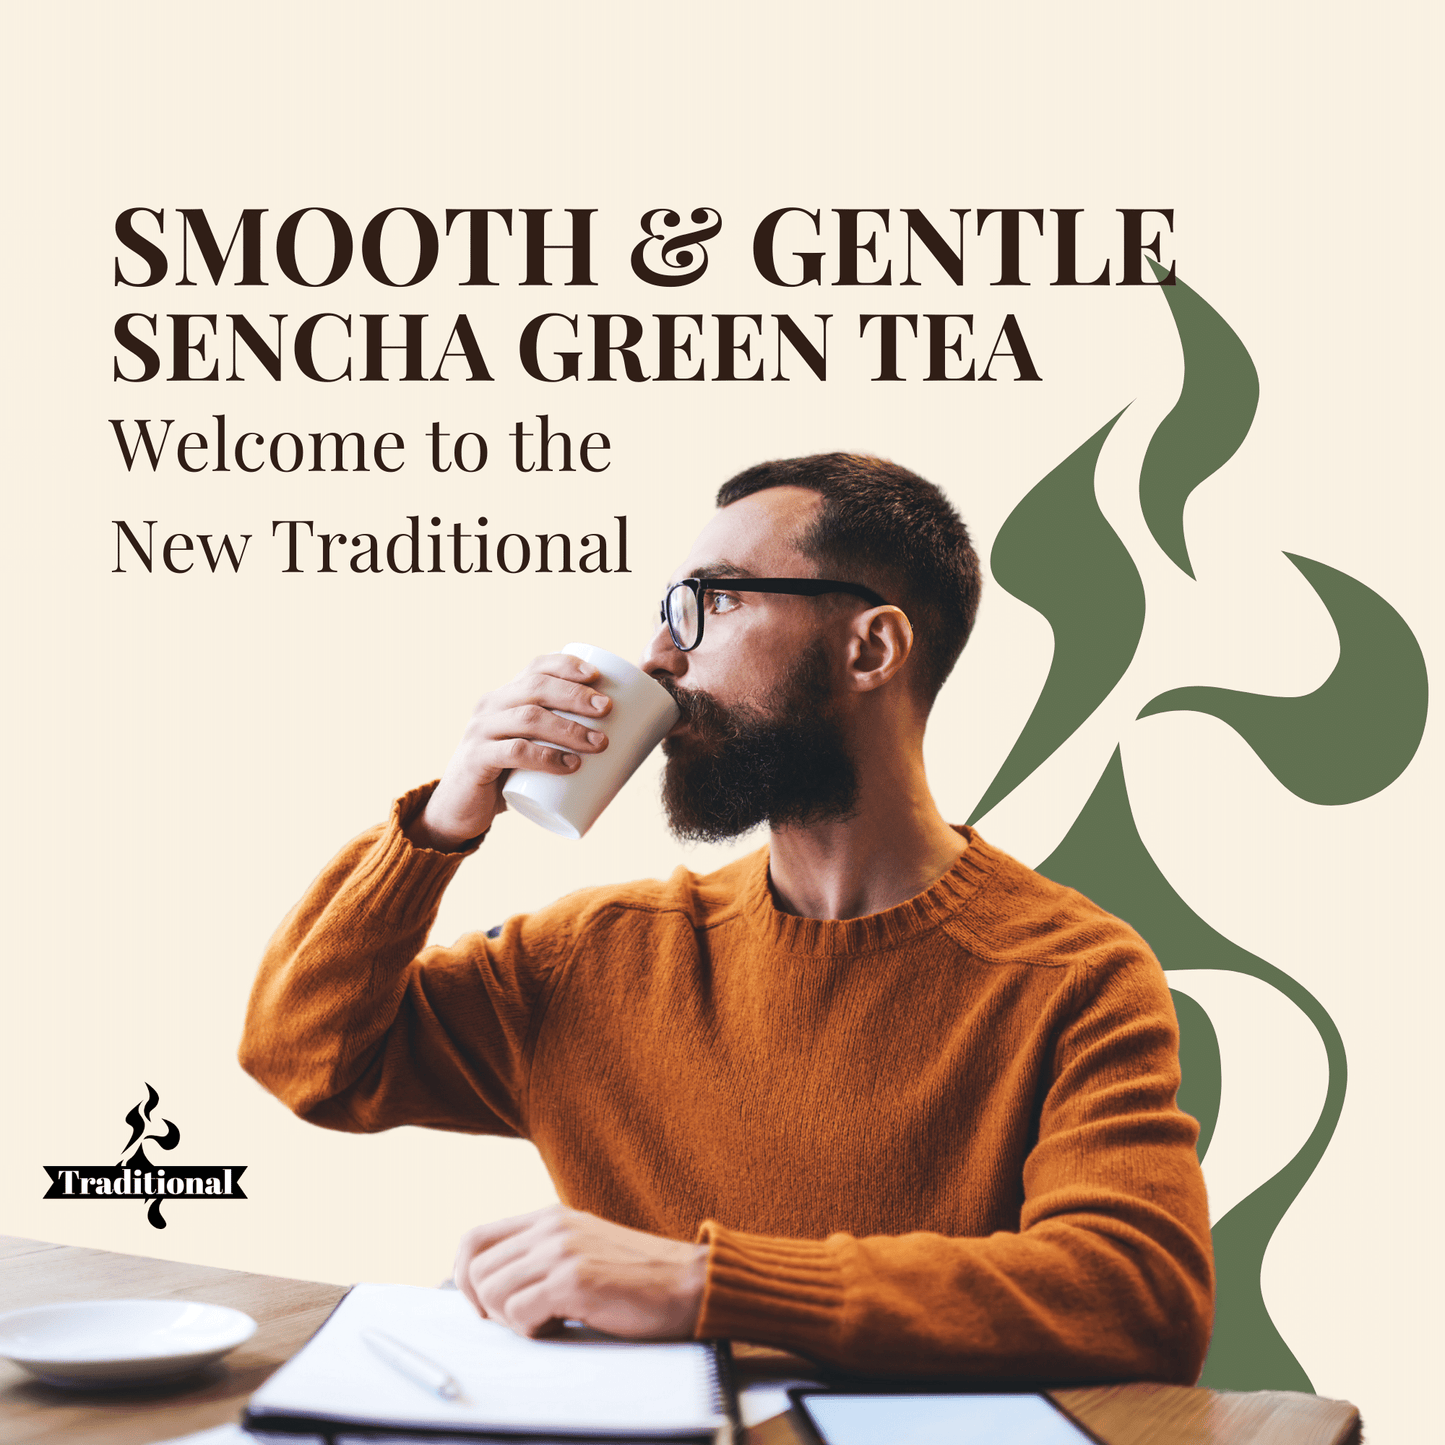 Smooth & Gentle. Sencha Green Tea